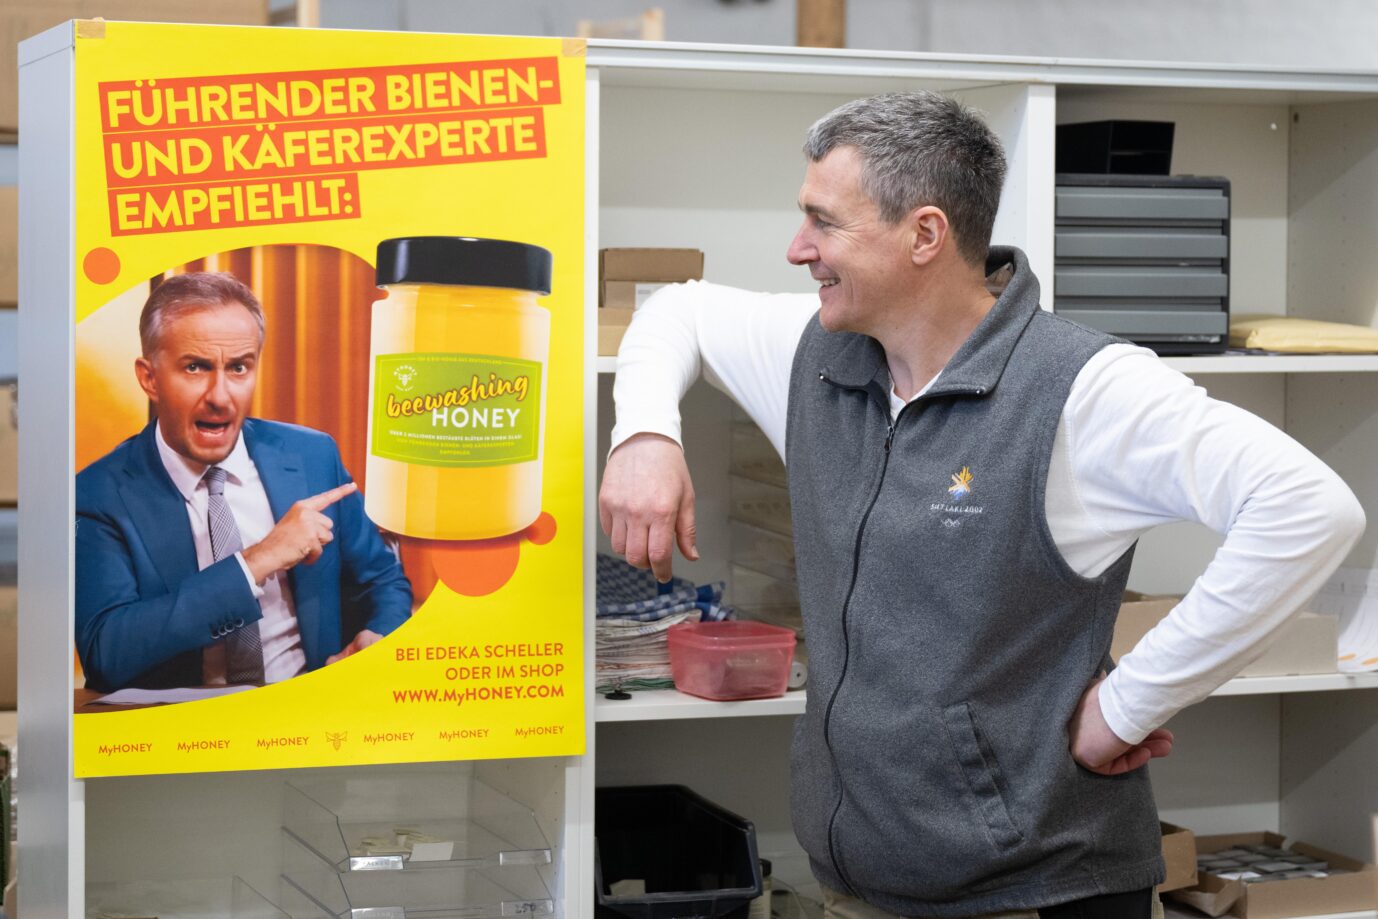 Rico Heinzig, Imker, steht neben einem Plakat mit dem Foto des Moderators Jan Böhmermann. Böhmermann verklagt den Imker auf 20.000 Euro, weil er ungefragt sein Bild und seinen Namen genutzt hat.